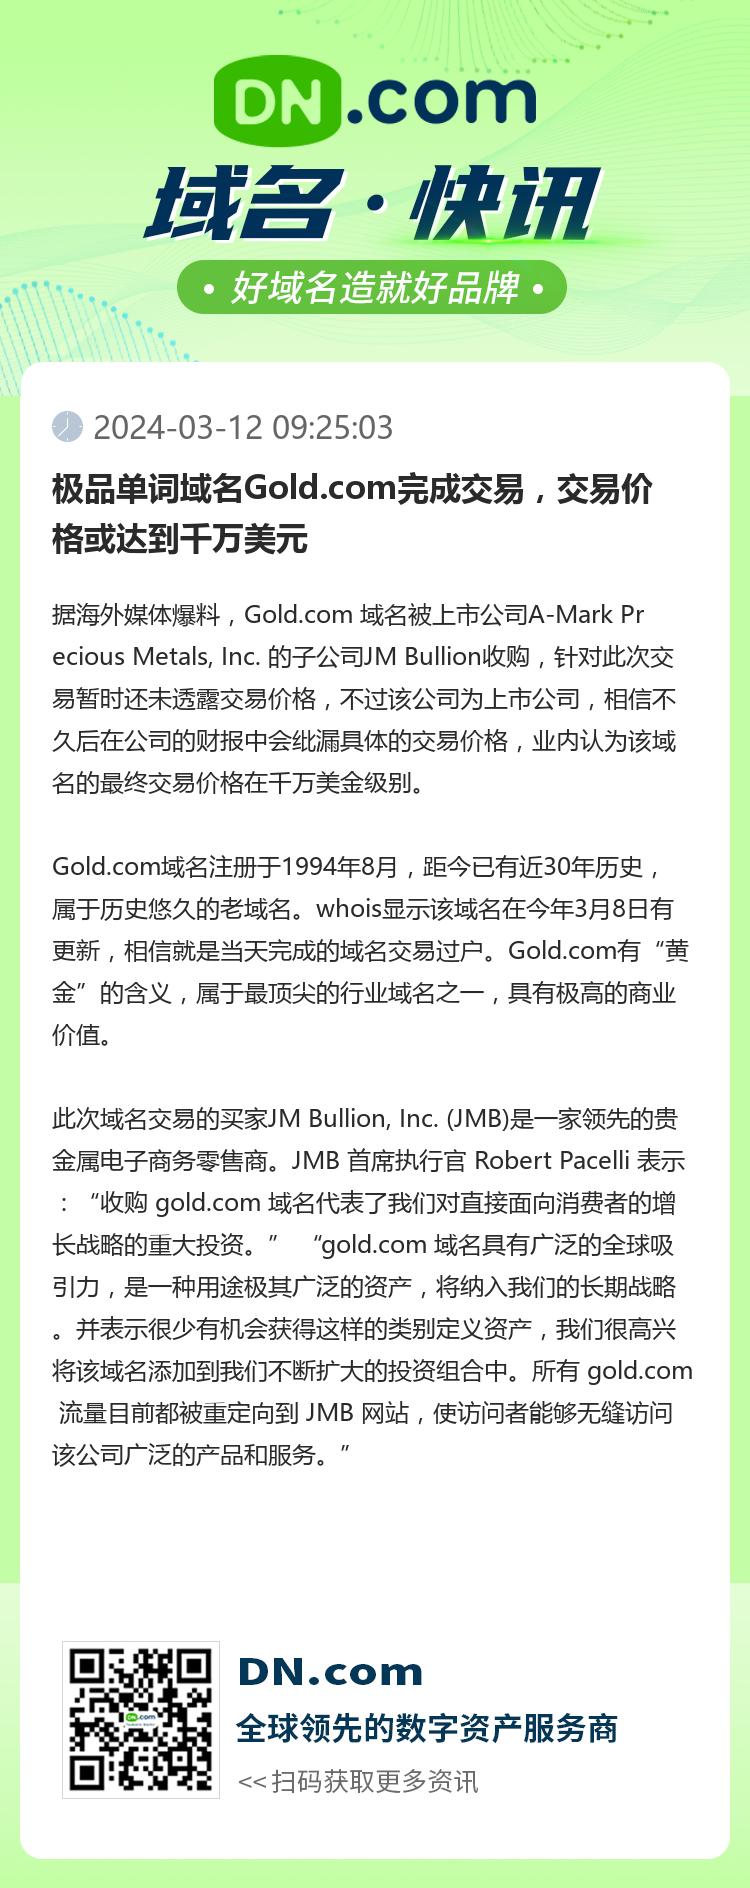 极品单词域名Gold.com完成交易，交易价格或达到千万美元